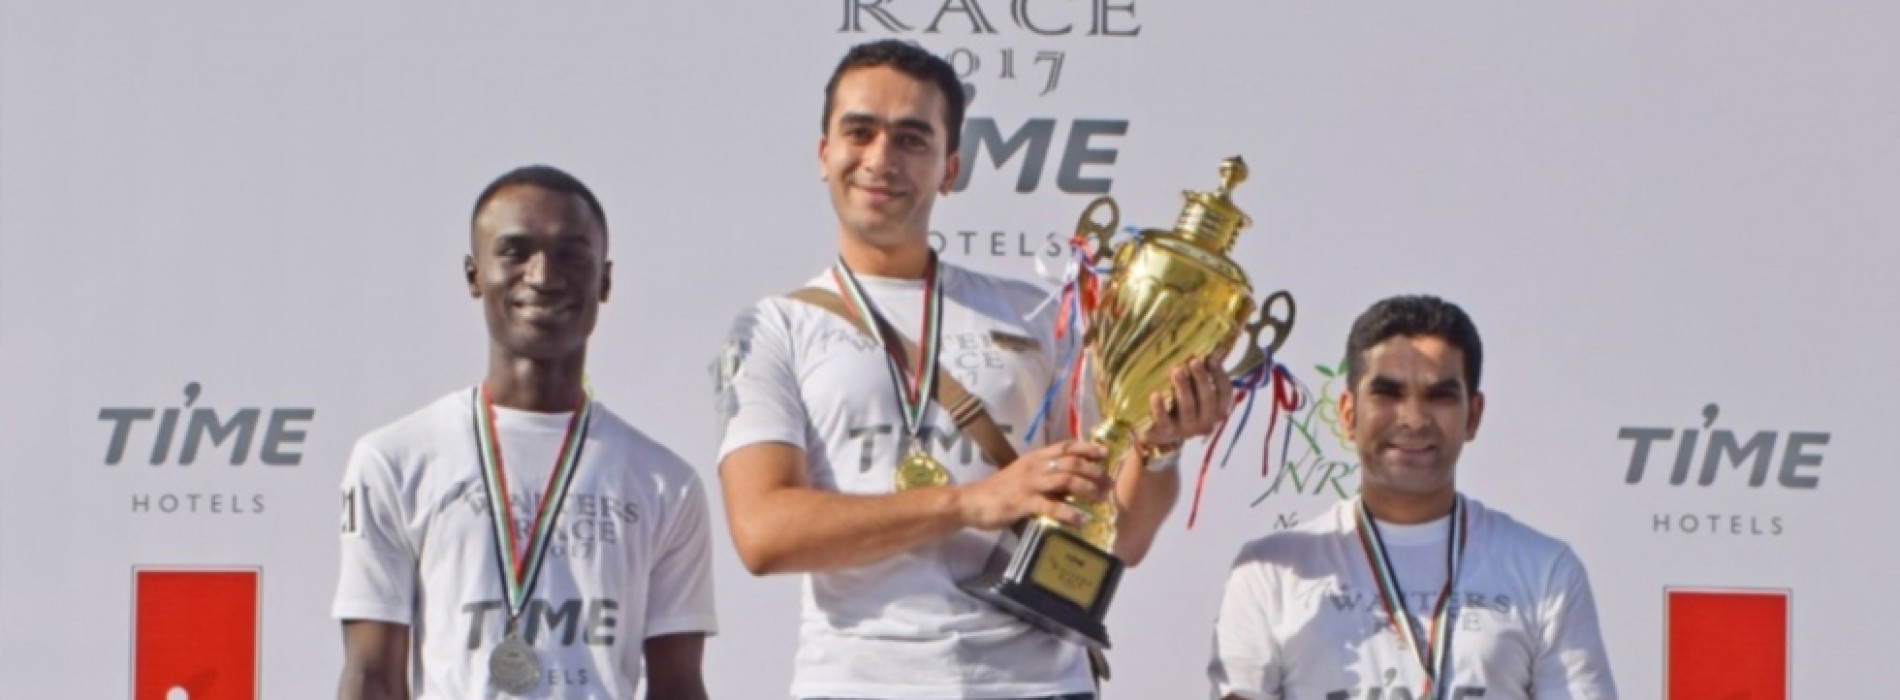 Fastest waiter in Dubai wins again